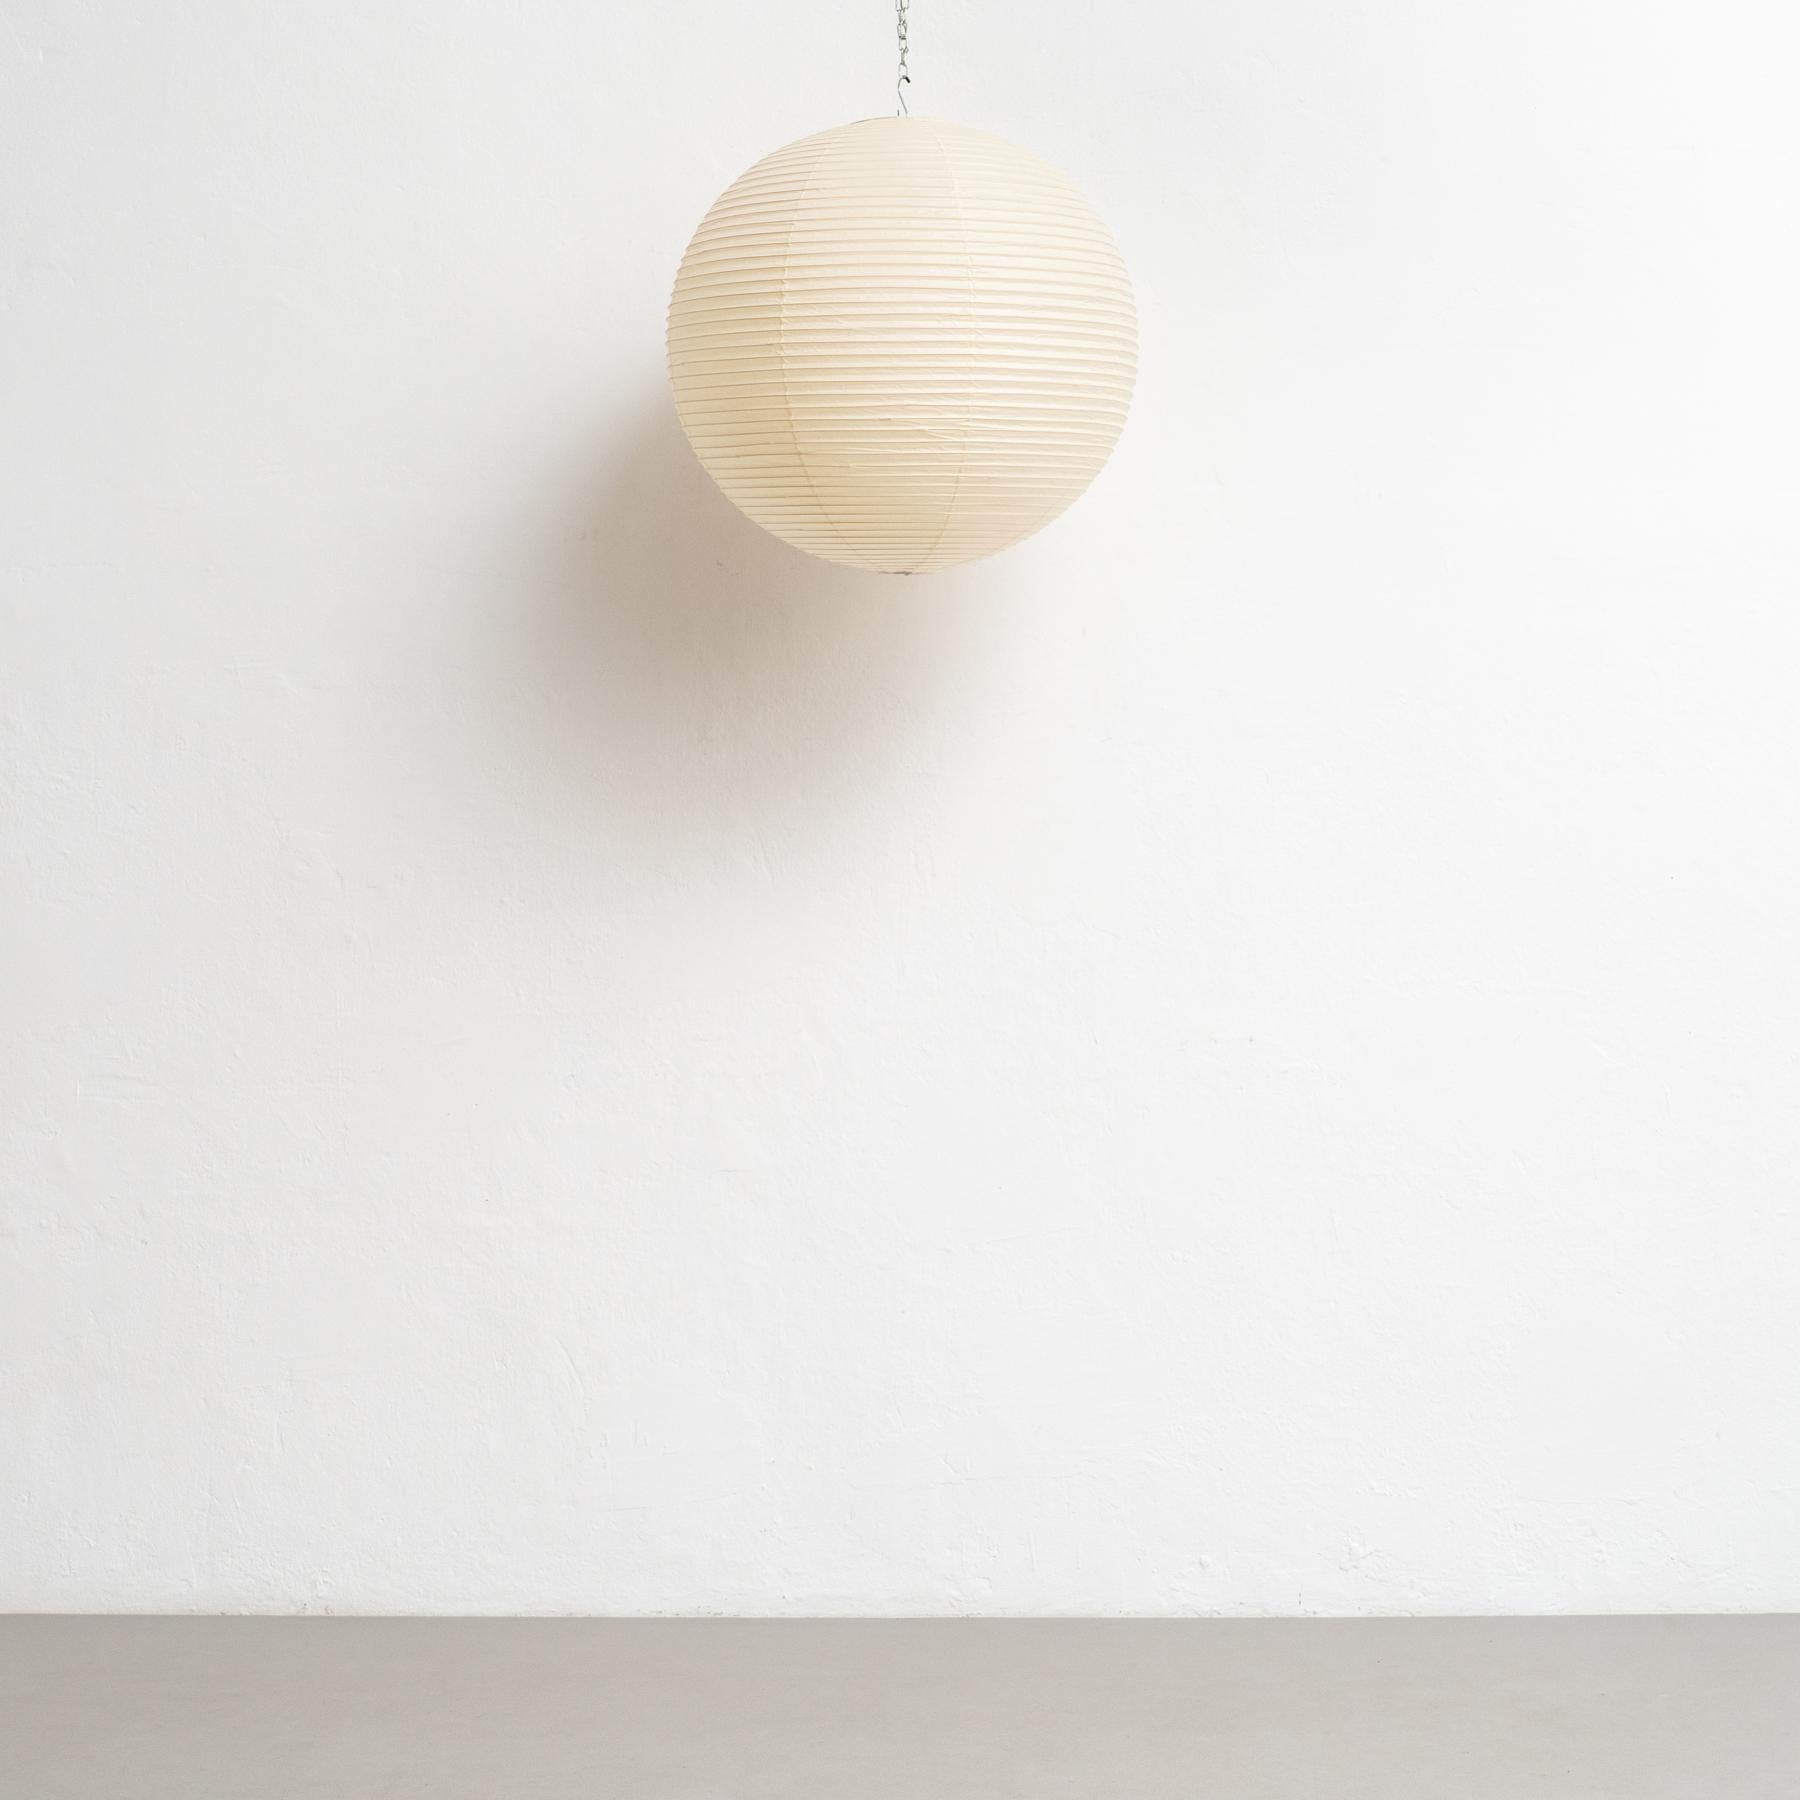 Découvrez l'élégance intemporelle de la lampe suspendue Akari 55A d'Isamu Noguchi, un chef-d'œuvre de design qui transcende les générations. Créée en 1951 et fabriquée avec expertise par Ozeki & Co. au Japon vers 1980, cette lampe témoigne de